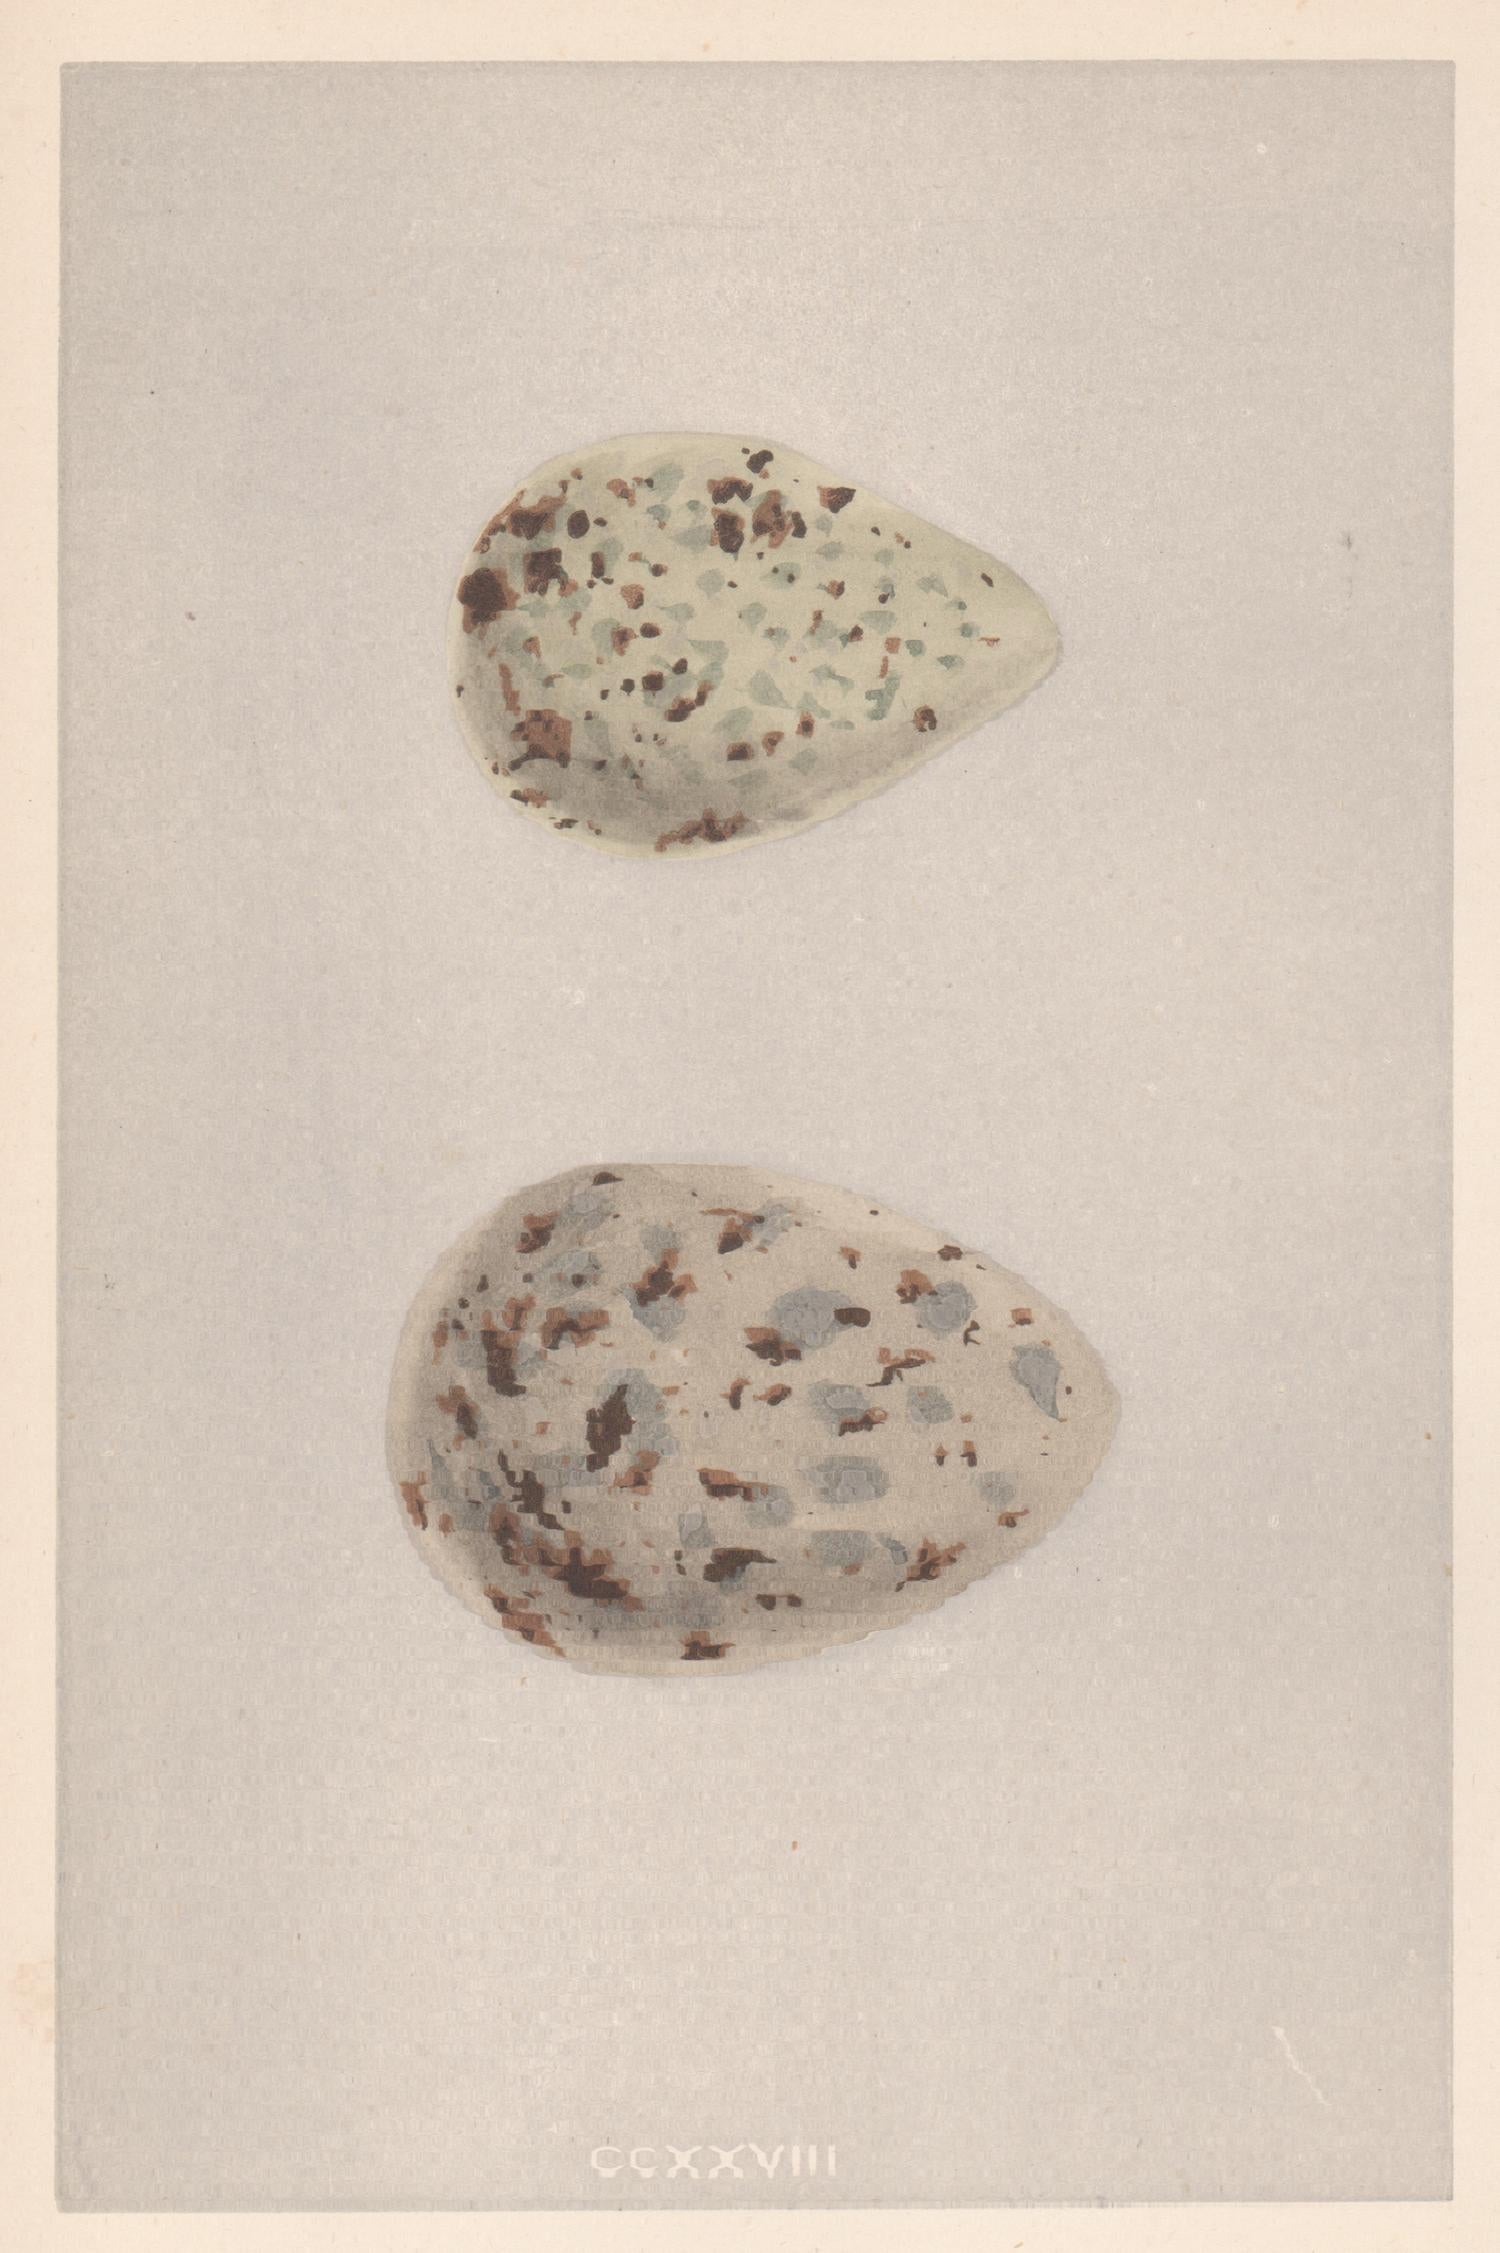 Vogeleier – Antiker Eierfarben-Holzschnitt mit Vogelmotiv, 1875